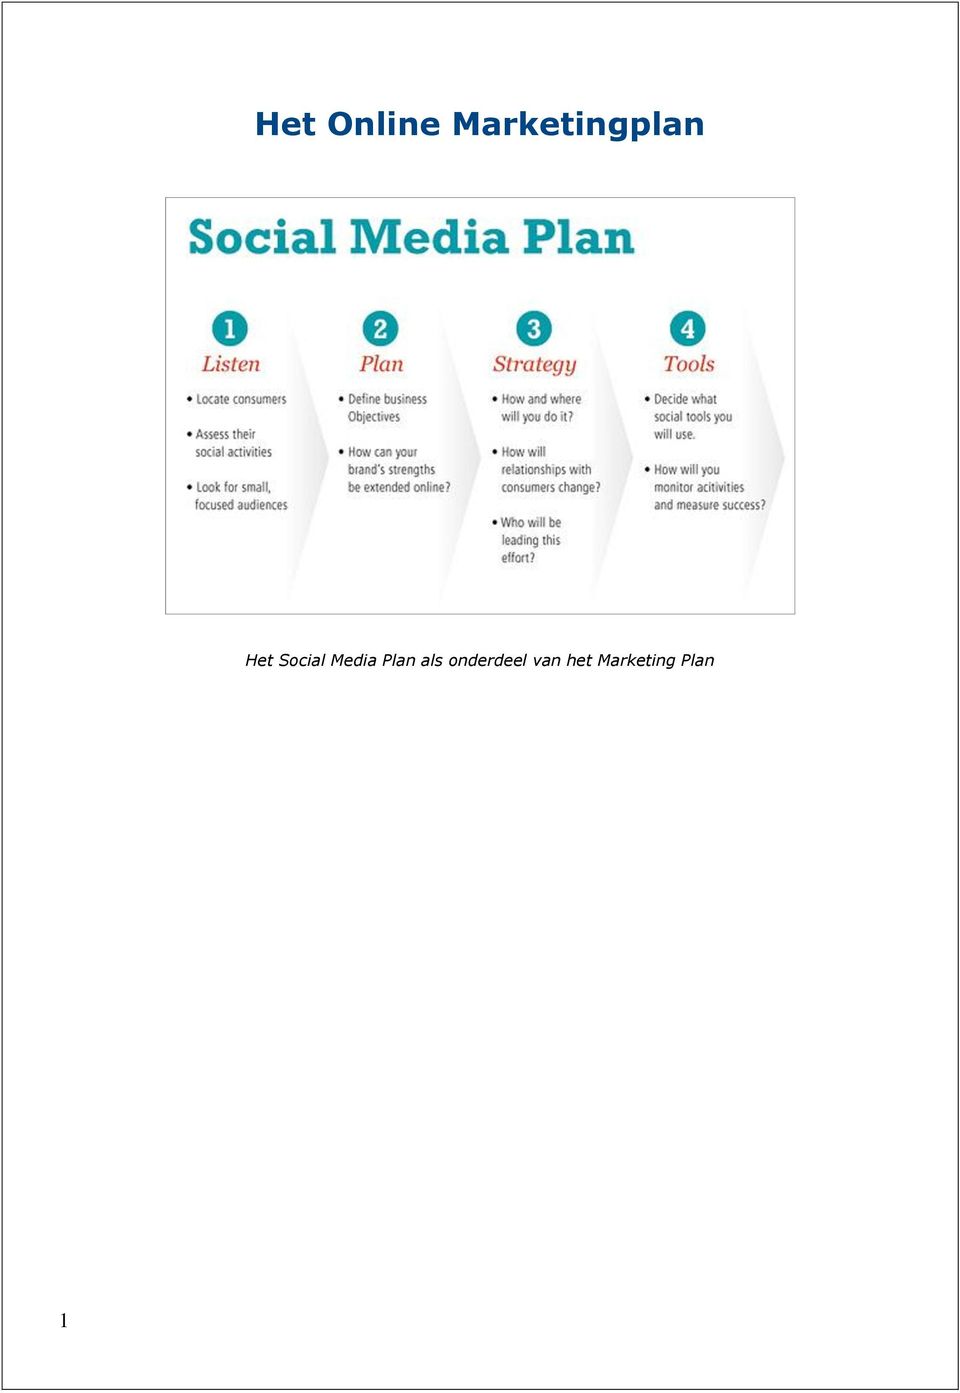 Social Media Plan als